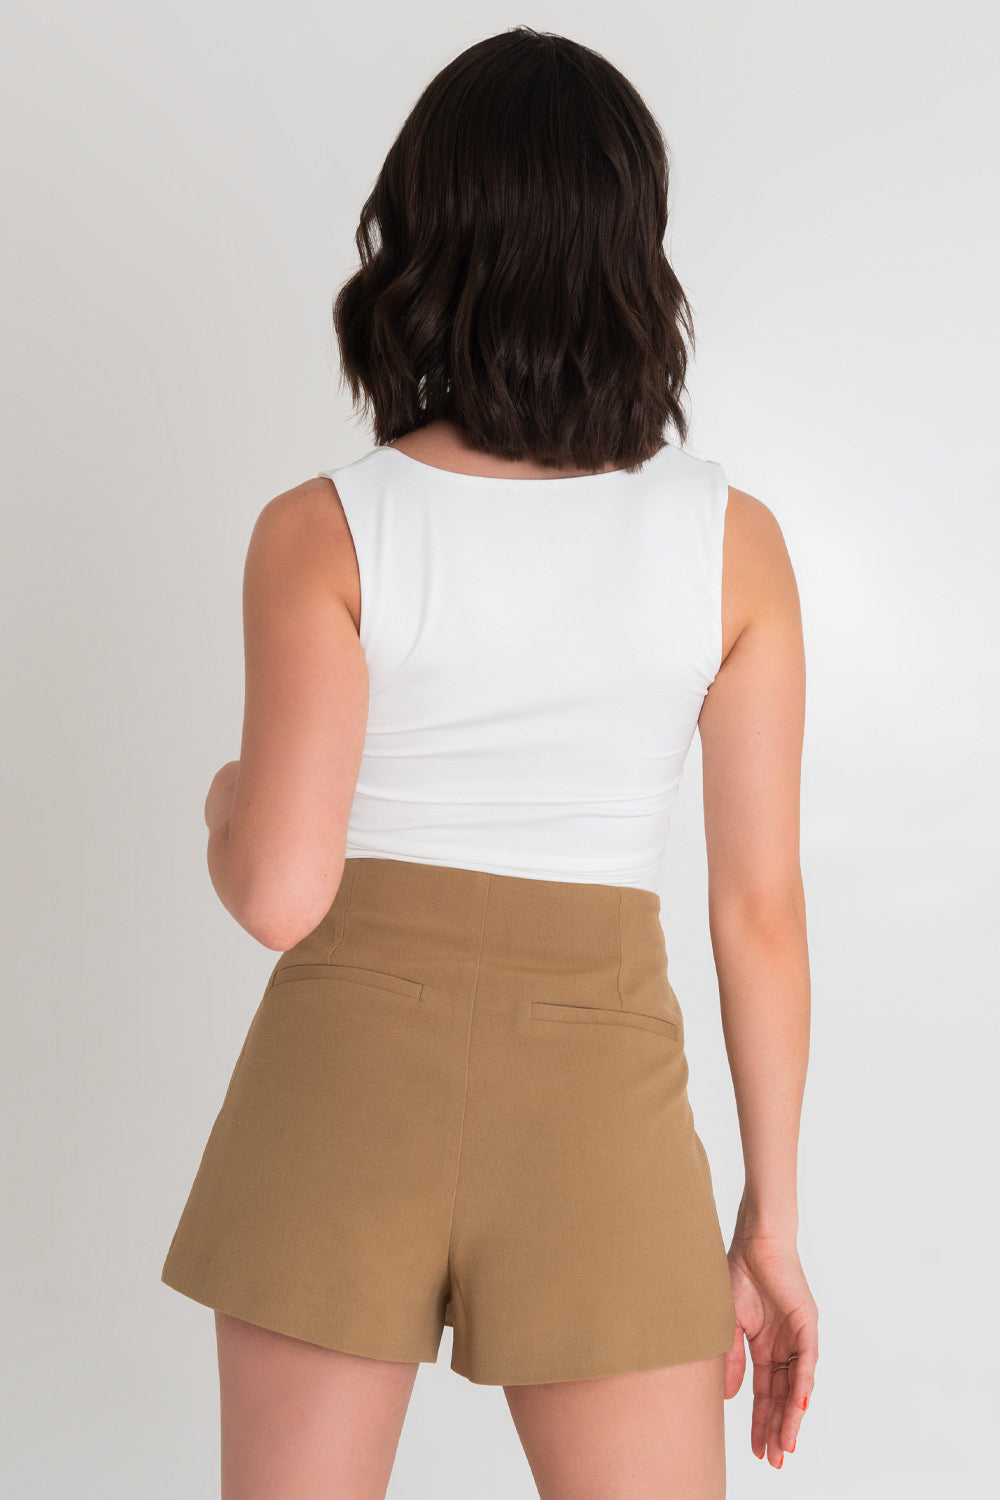 Falda short corto cruzado de fit ajustado, cintura alta, vivos decorativos posteriores y bajo curveado frontal. Cierre lateral con cremallera oculta.